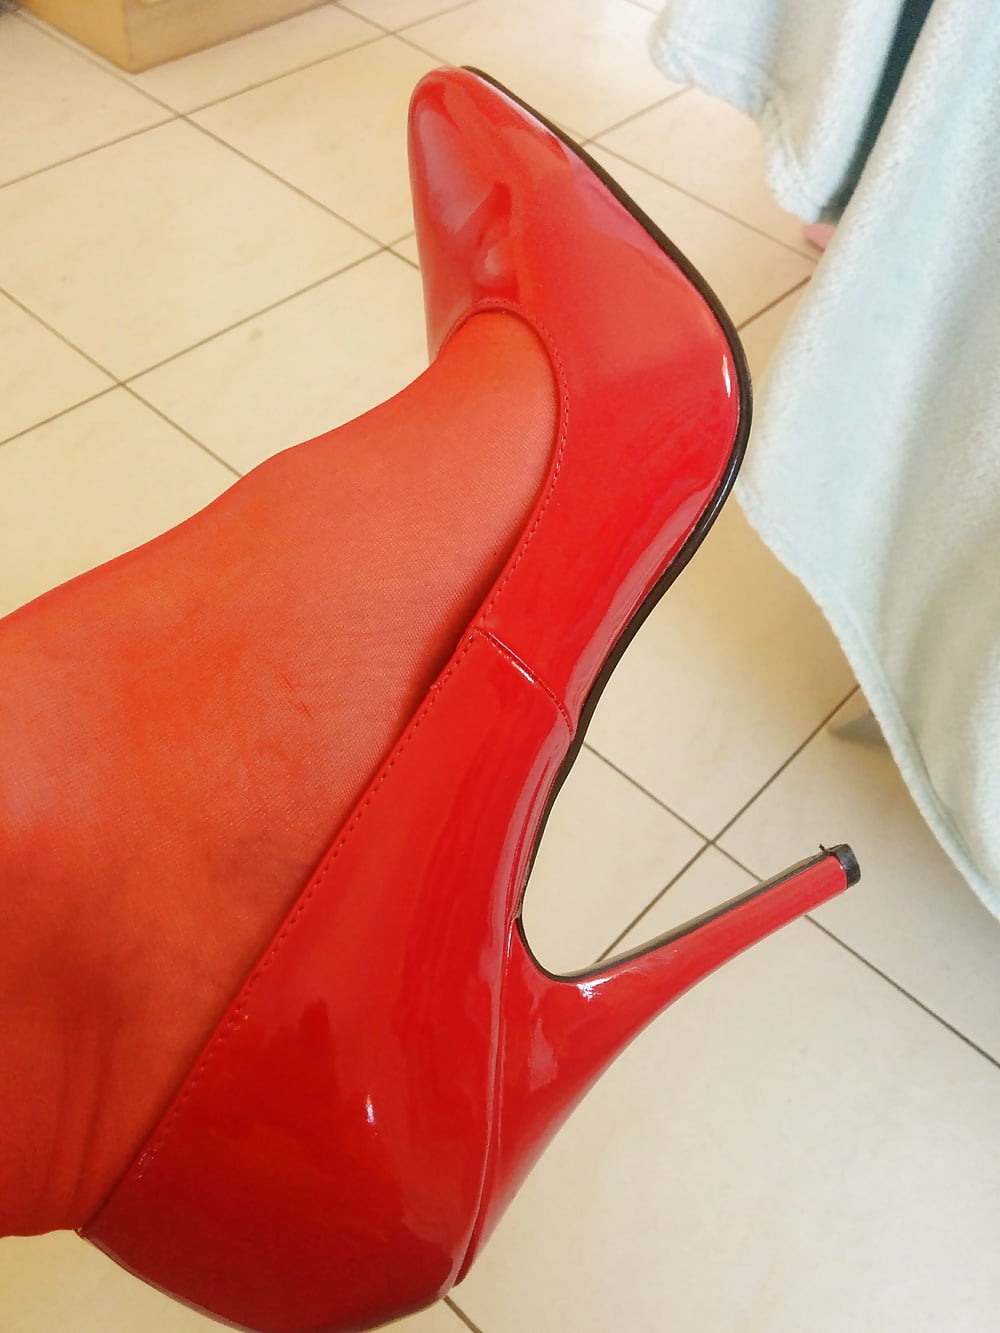 Tacones nuevos: zapato rojo de 6'. ¿te gusta?
 #106673997